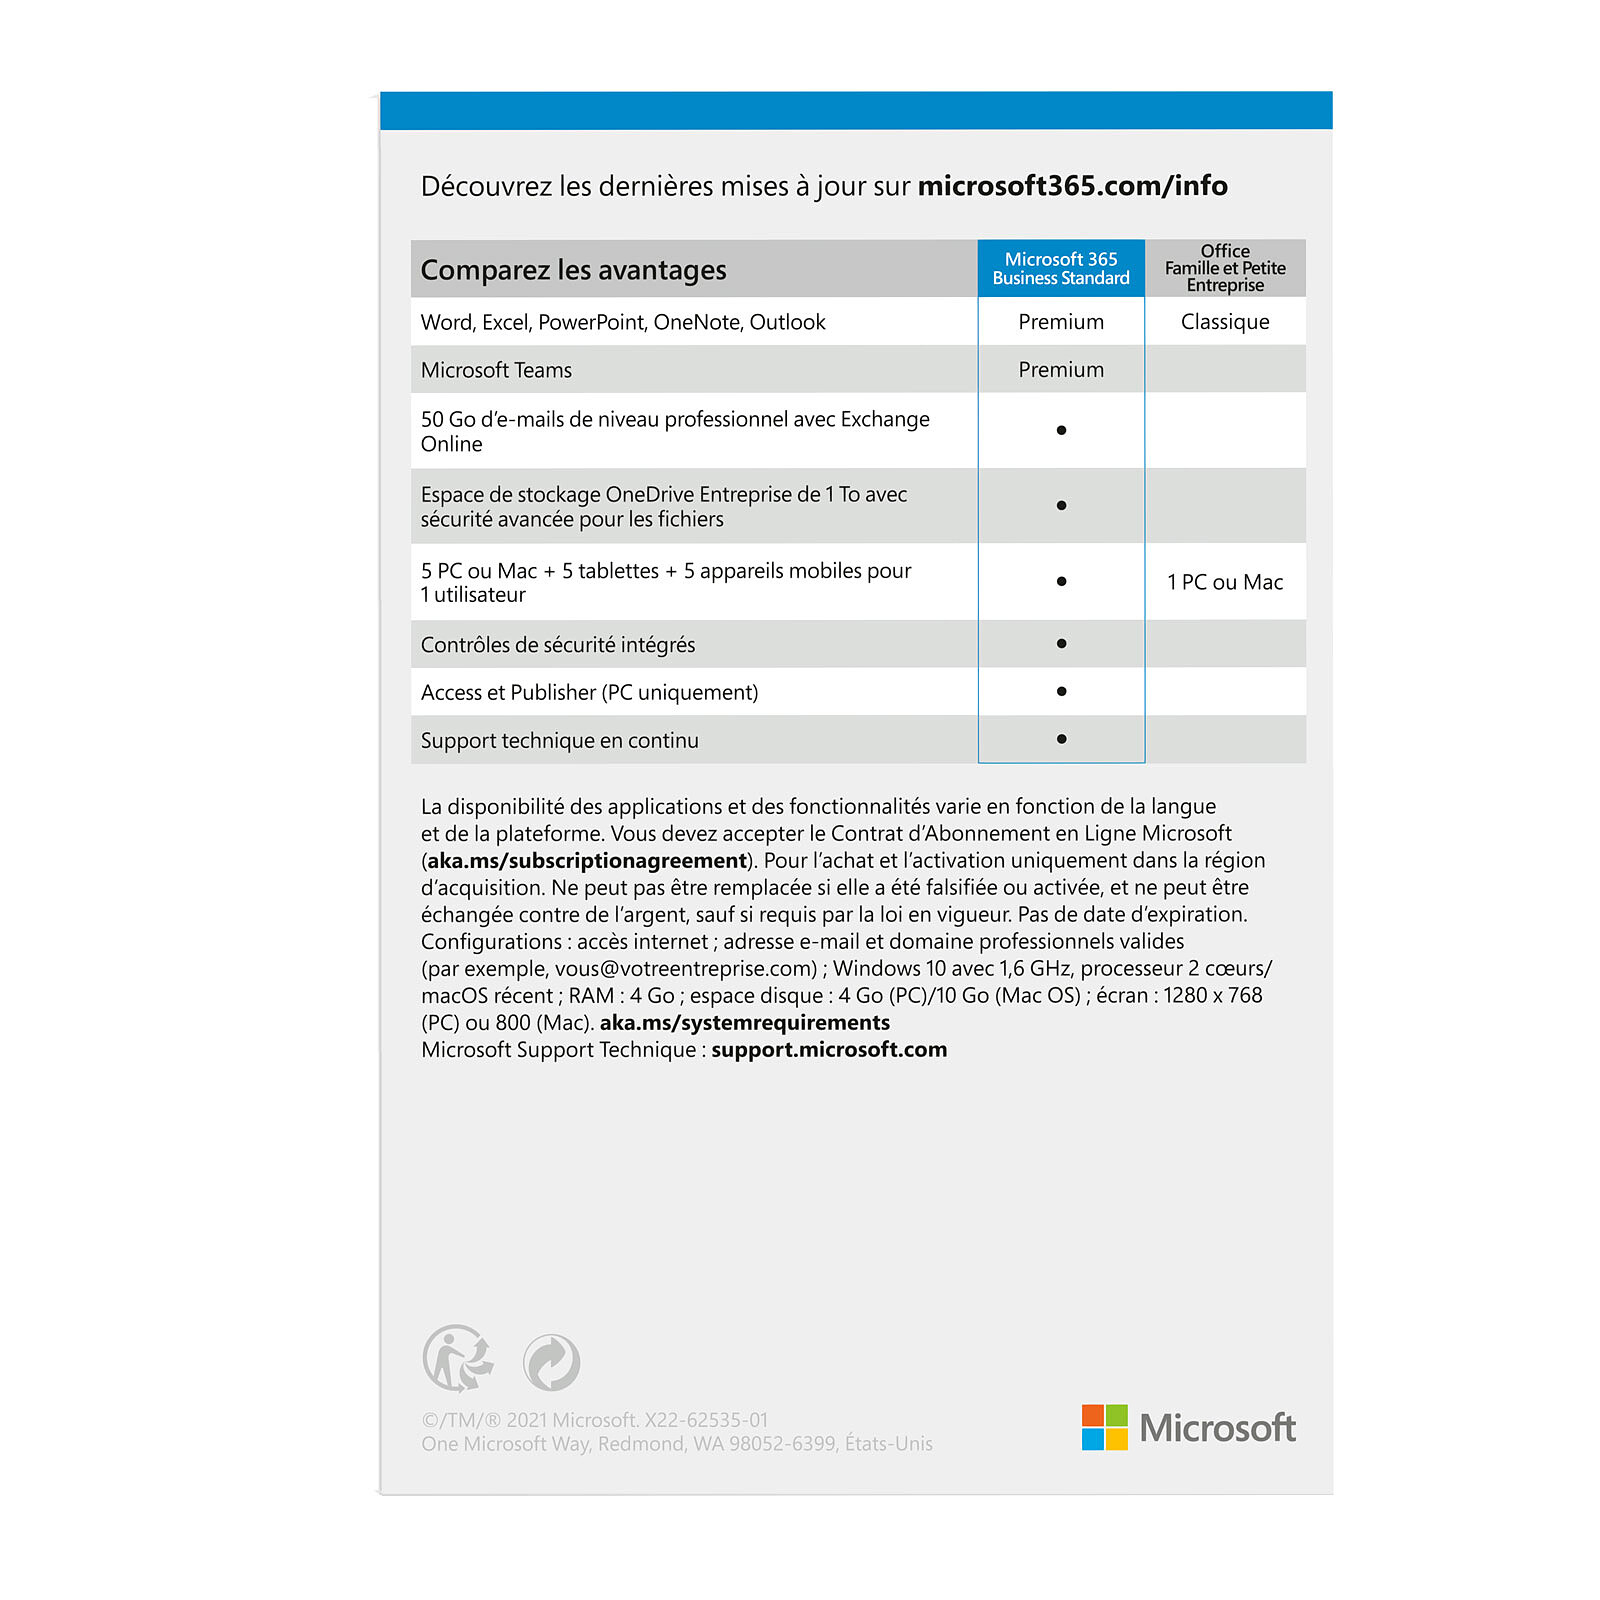 Microsoft Office 2021 Famille et Etudiant - Licence perpétuelle - 1 PC ou  Mac - A télécharger - Logiciel bureautique - LDLC